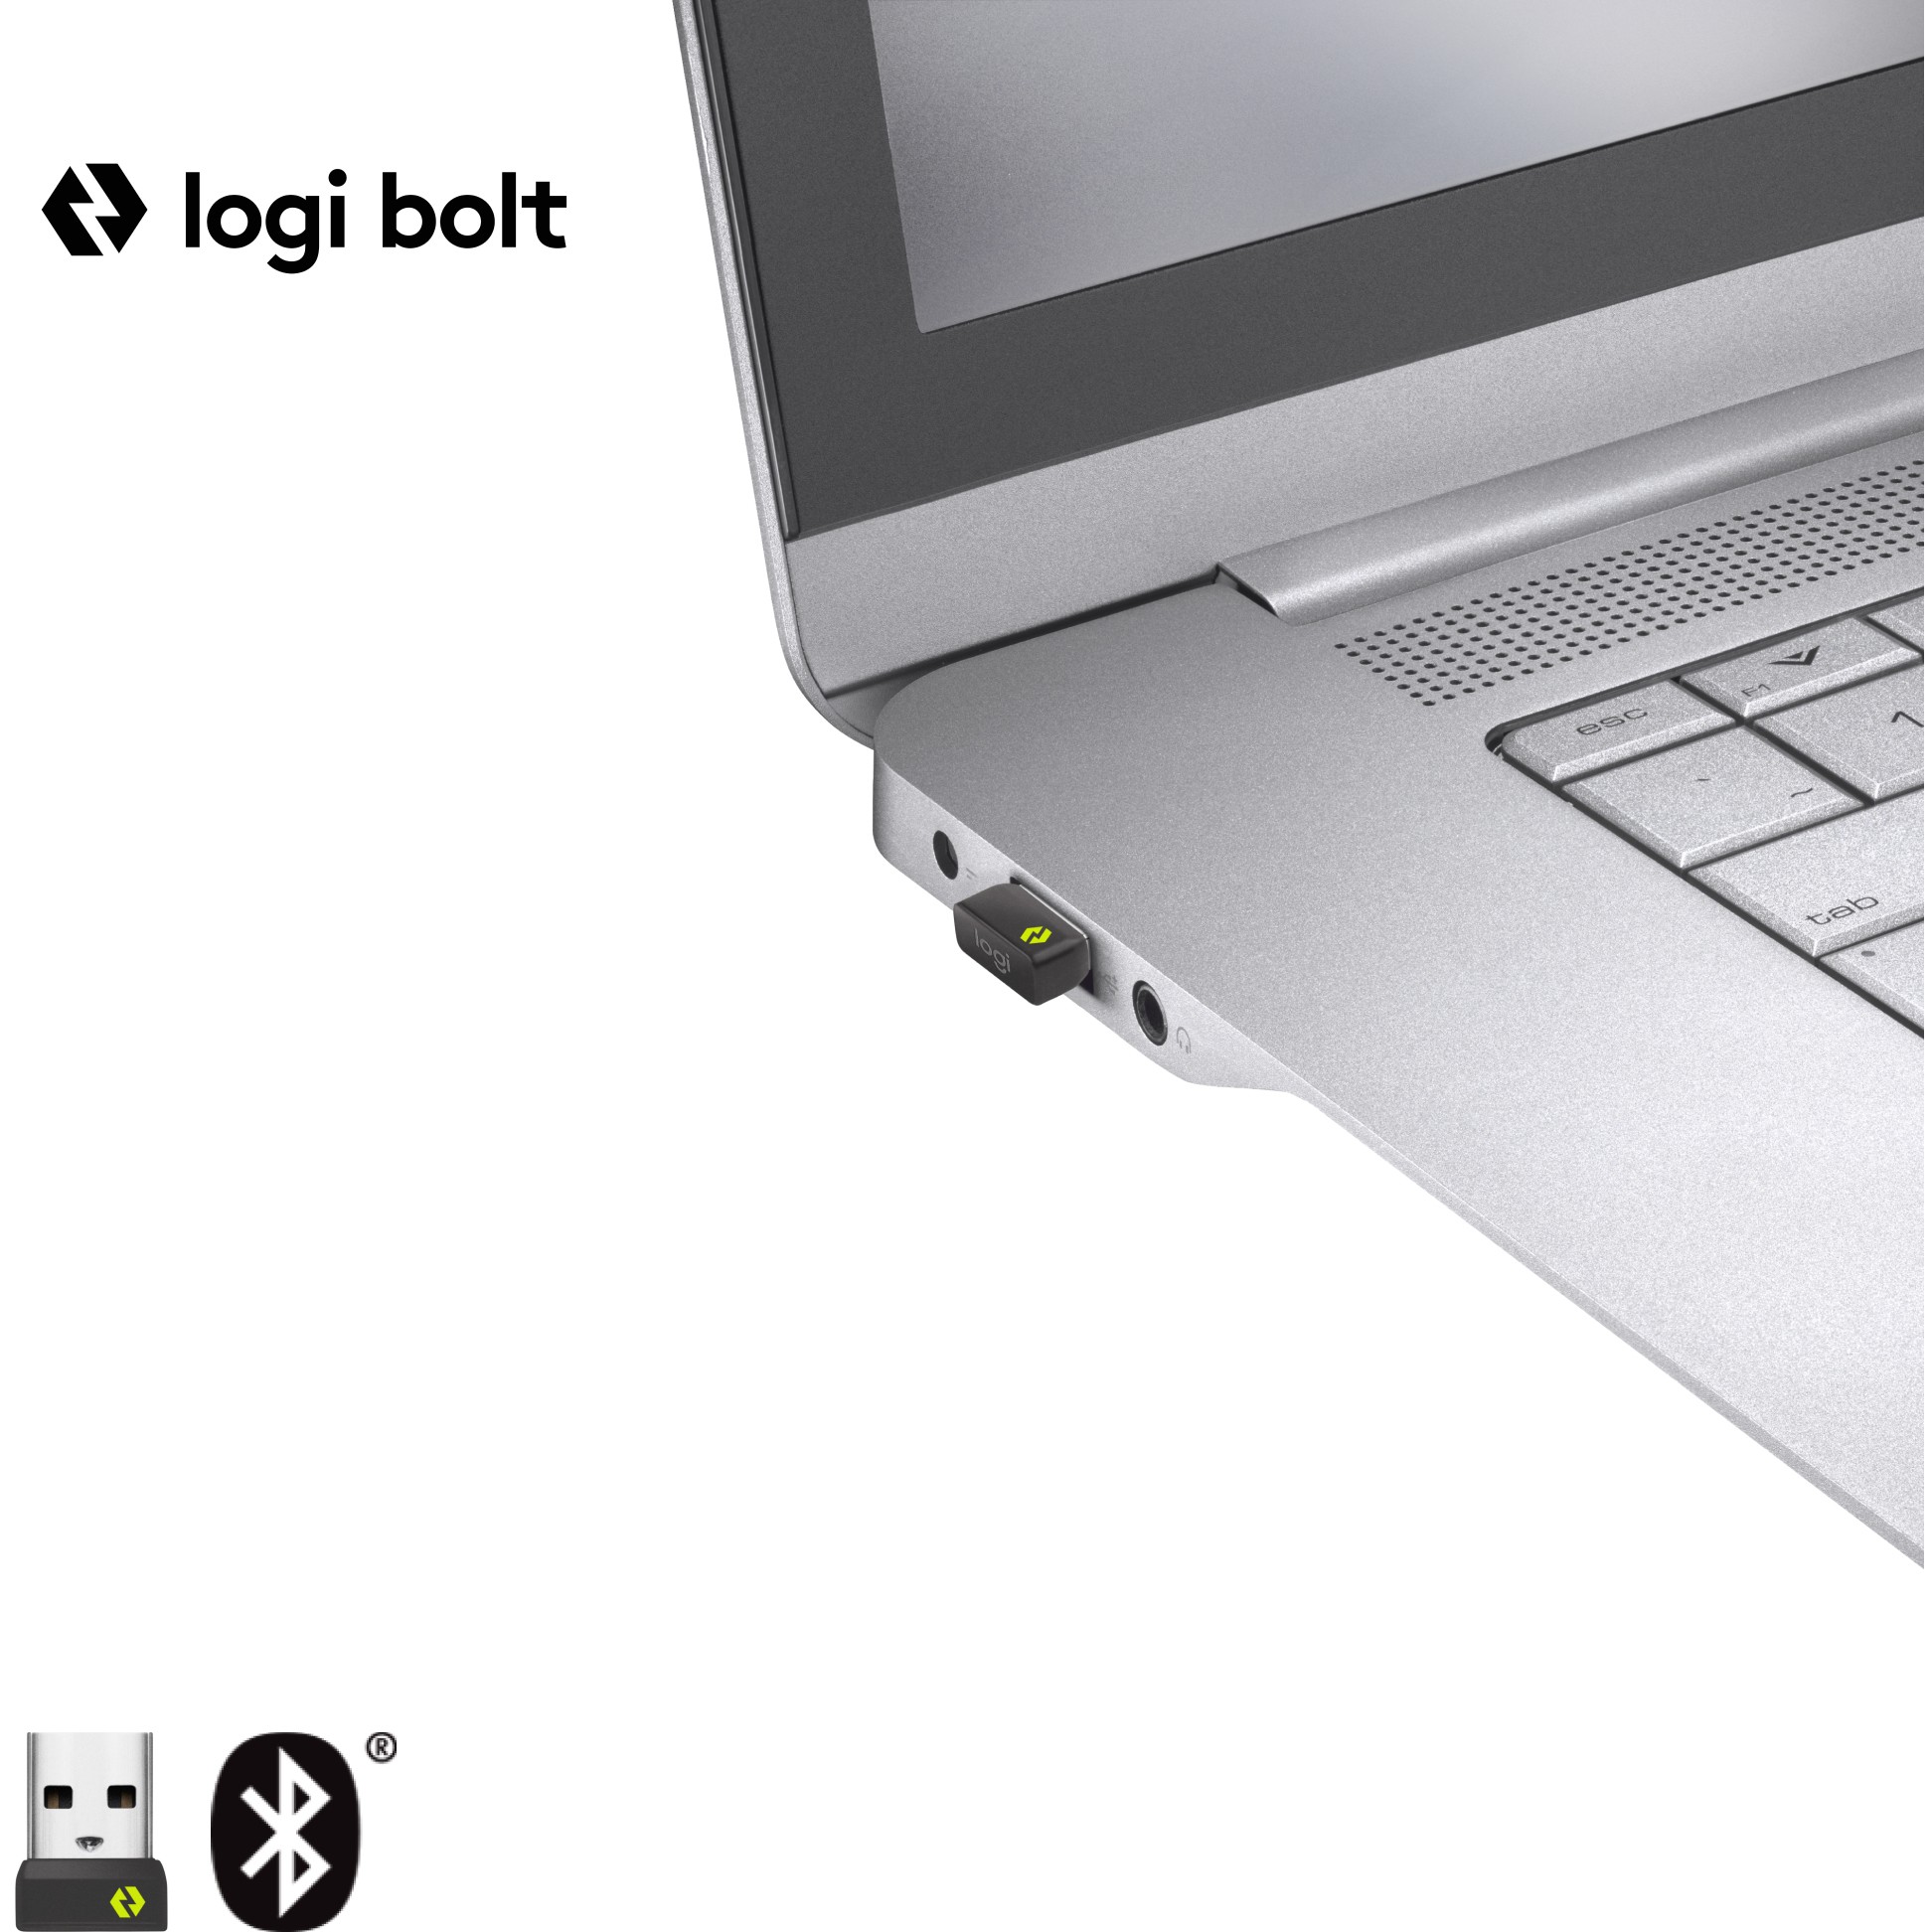 Logitech 910-006348, Mäuse & Tastaturen Mäuse, M650  (BILD2)